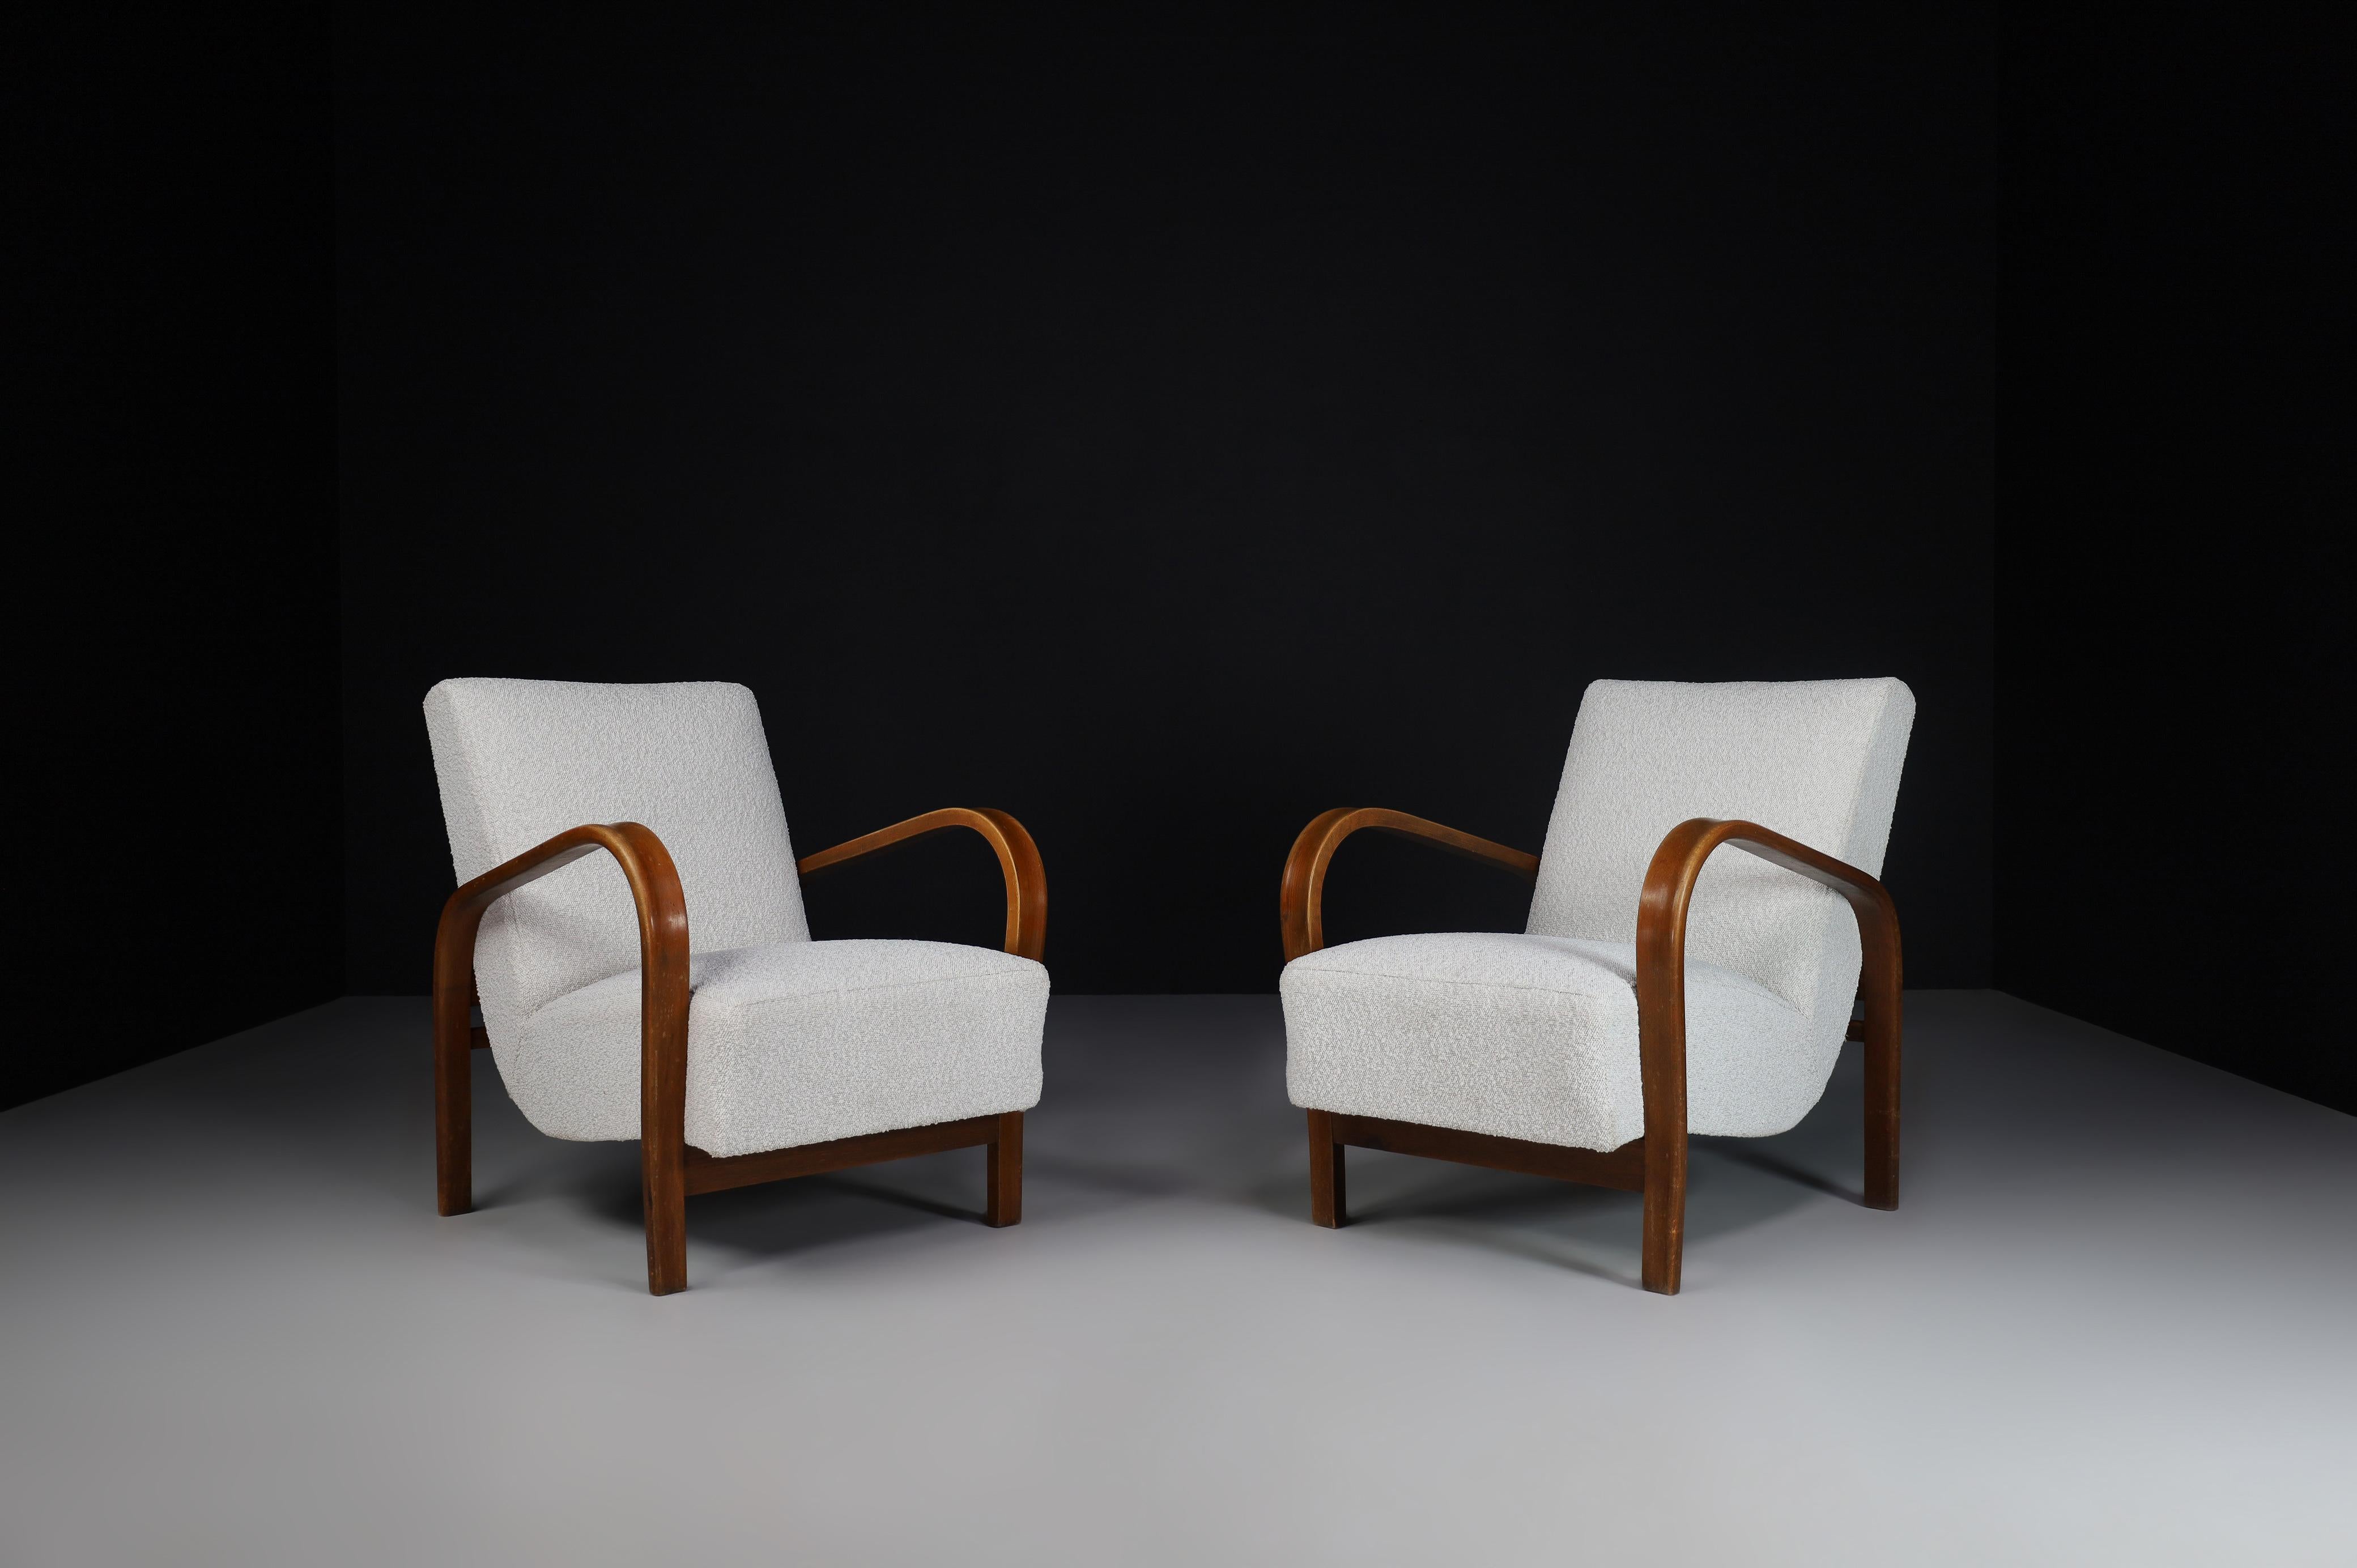 Karel Koželka & Antonín Kropáček Fauteuils en bois courbé.

Ces chaises iconiques de Tchécoslovaquie, datant de 1940, conçues par Karel Koželka et Antonín Kropáček, sont une référence pour le design du milieu du siècle en Europe centrale. Une